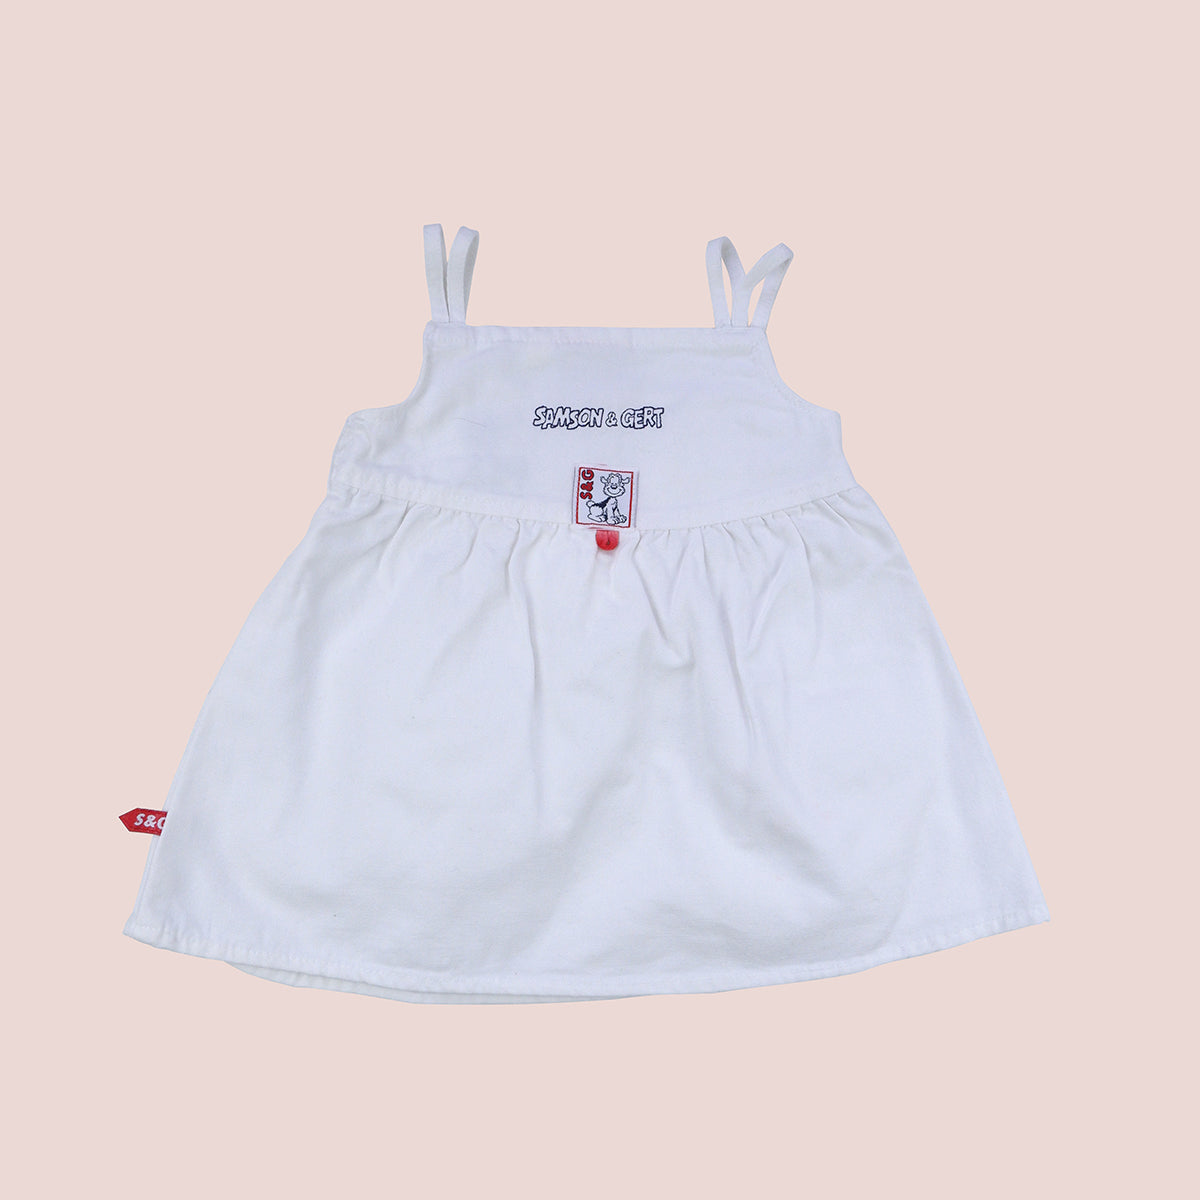 robe blanche tennis vintage pour enfants